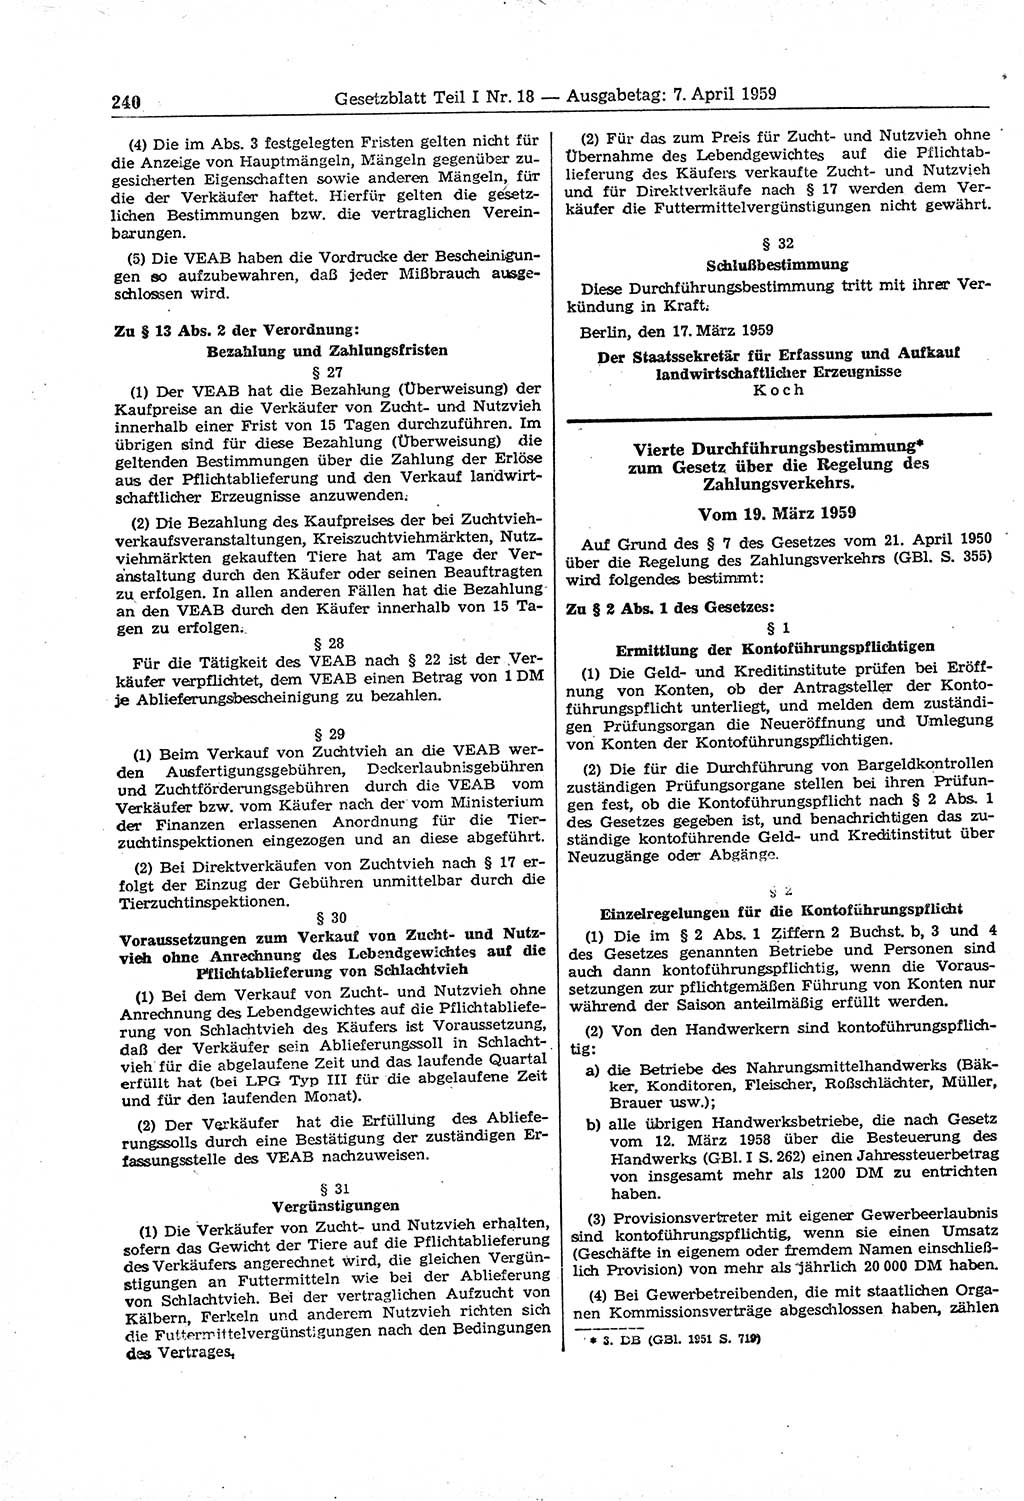 Gesetzblatt (GBl.) der Deutschen Demokratischen Republik (DDR) Teil Ⅰ 1959, Seite 240 (GBl. DDR Ⅰ 1959, S. 240)